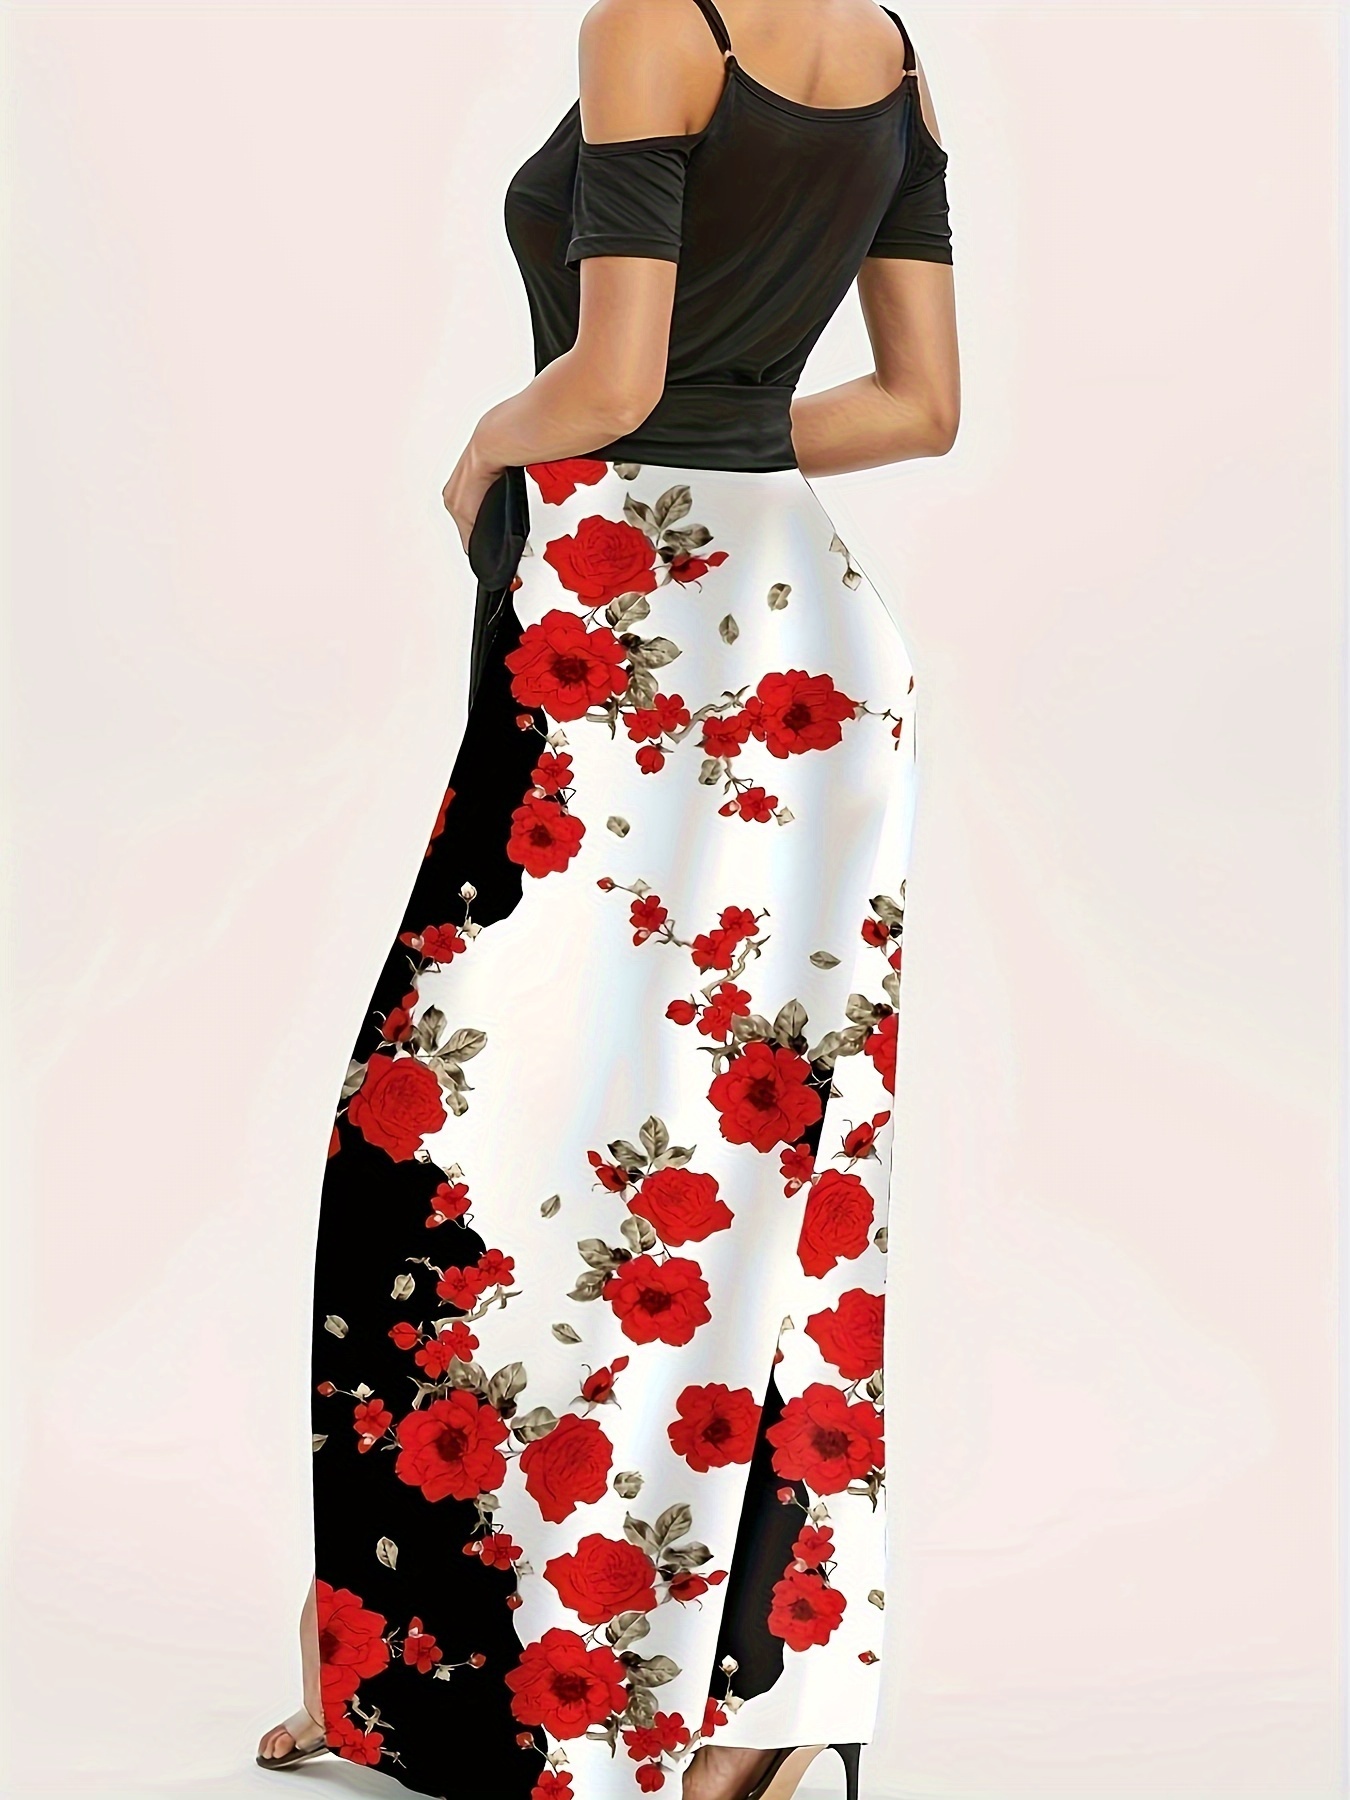 floral print cold shoulder dress elegant color block short sleeve maxi dress for summer womens clothing